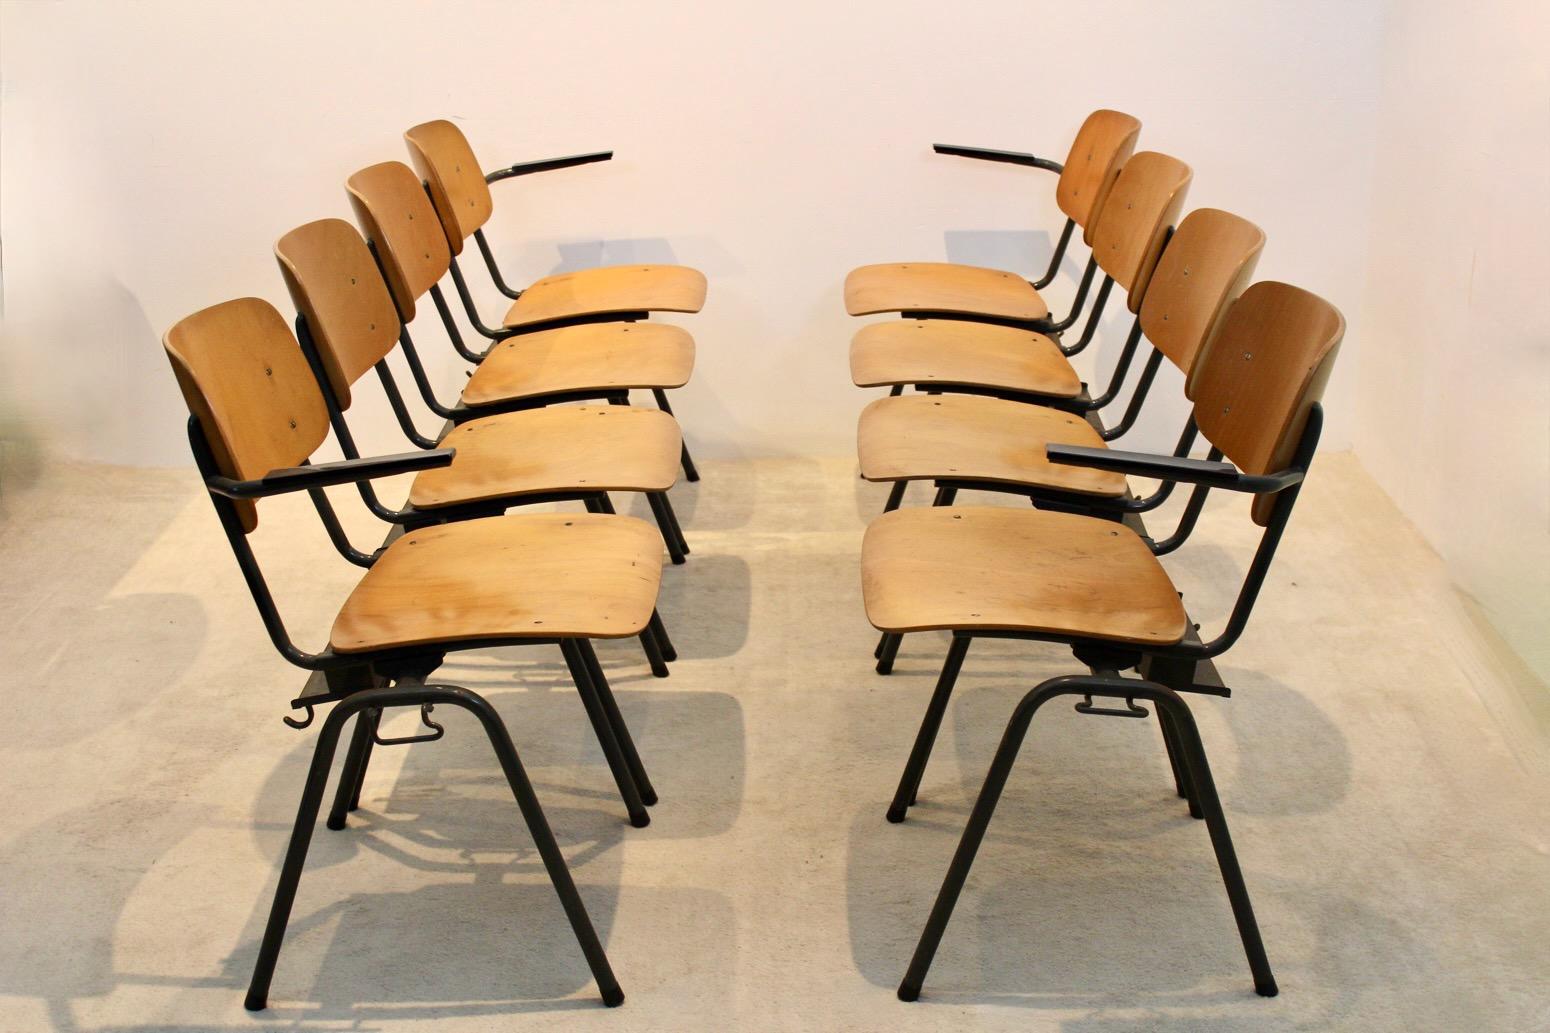 Einzigartiges und bequemes Industriesperrholz-Schulsofa, bestehend aus 4 miteinander verbundenen Stühlen, hergestellt von Marko Holland in den 60er Jahren. Die Stühle haben einen schwarzen Metallrohrrahmen und schön geschwungene Sitz- und